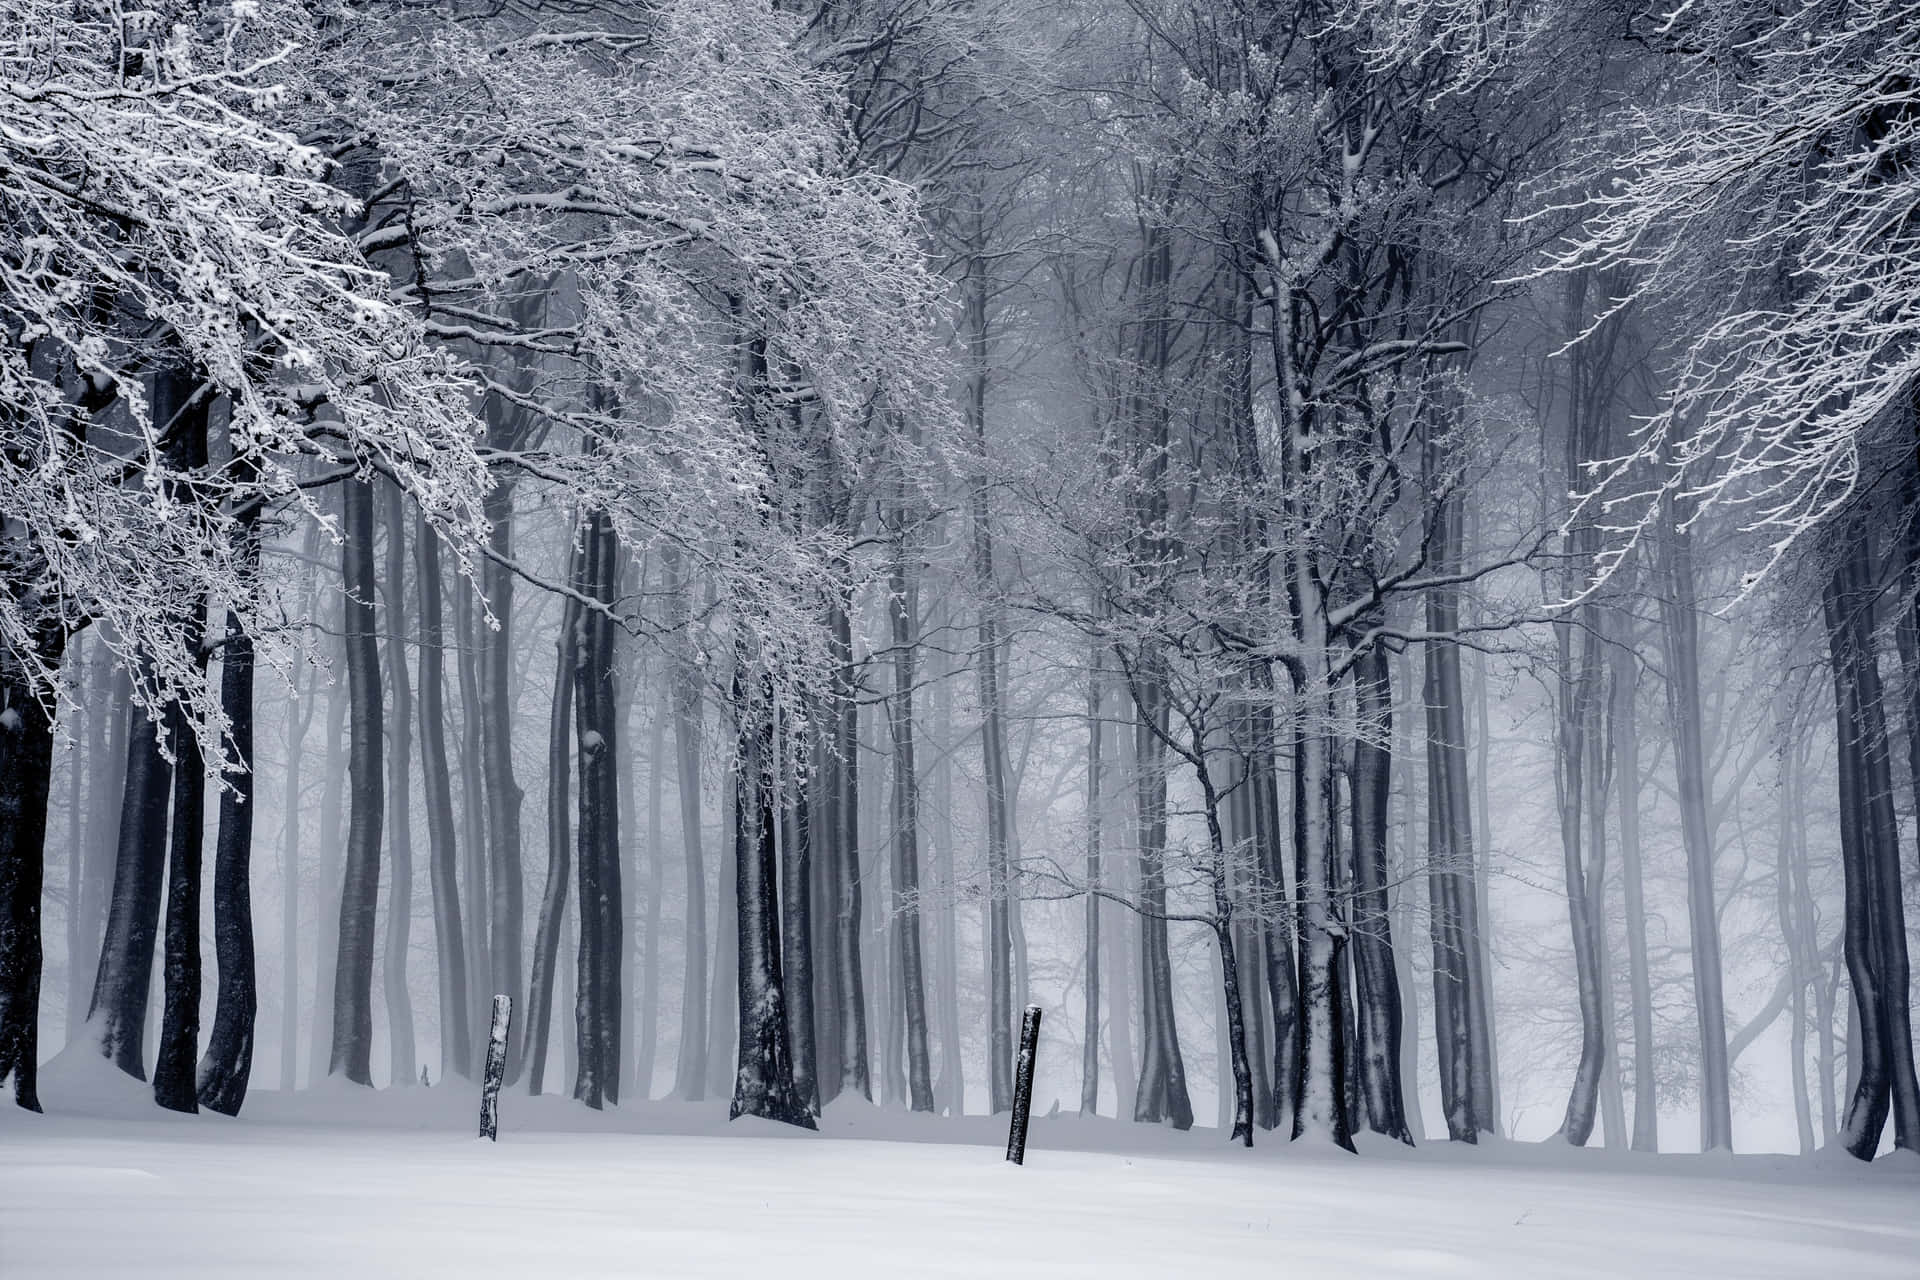 A beautiful winter wonderland, a snowy forest awaits.